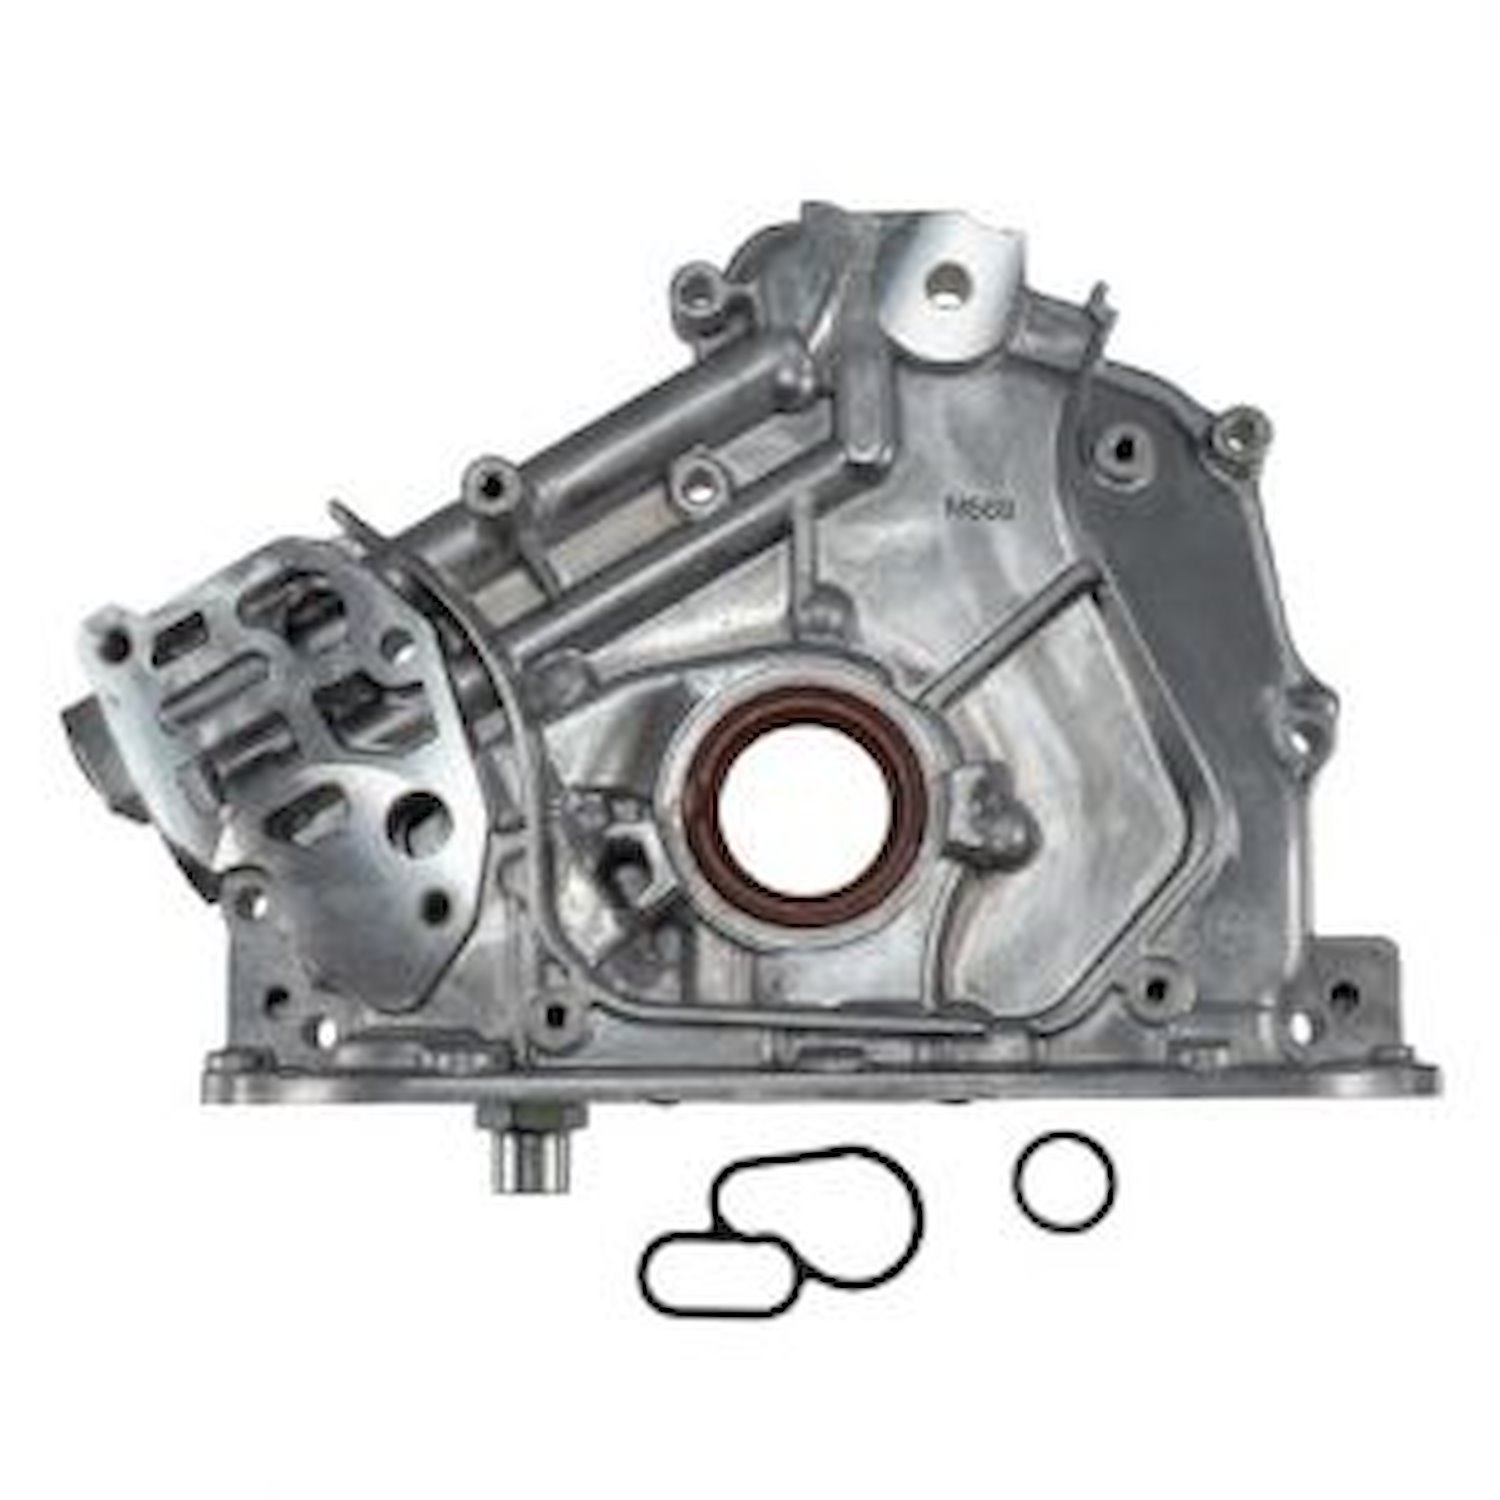 Oil Pump Fits Select Honda/Acura 3.0/3.5L Engines